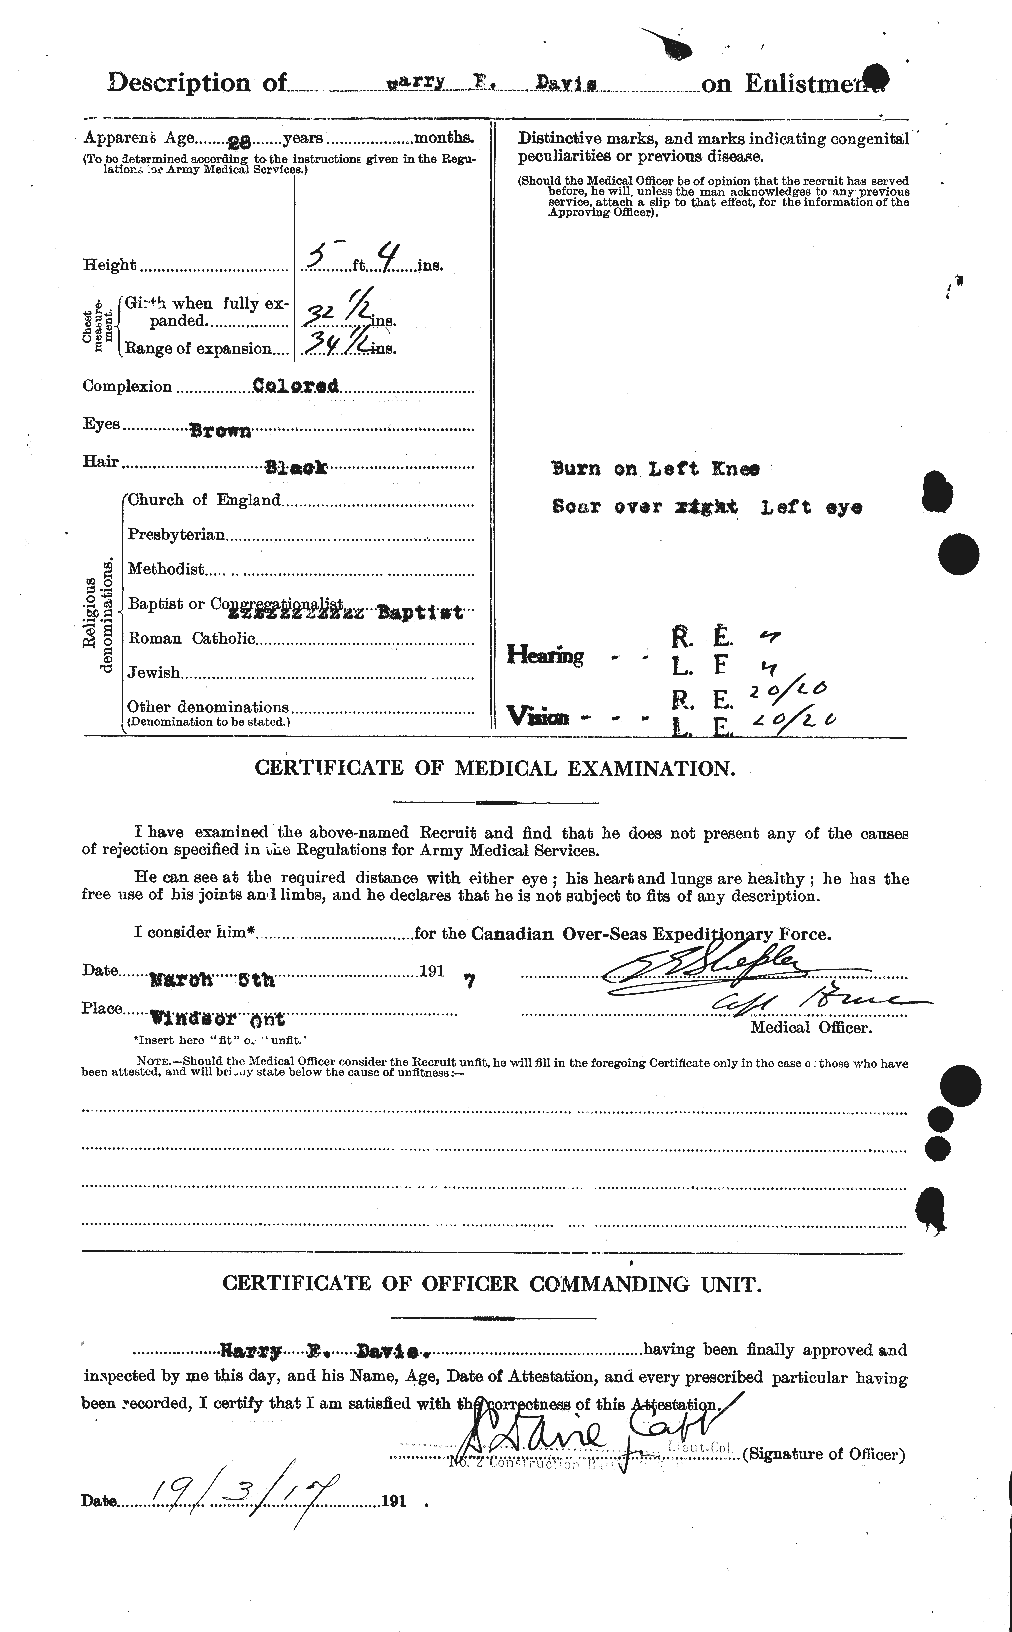 Dossiers du Personnel de la Première Guerre mondiale - CEC 283890b